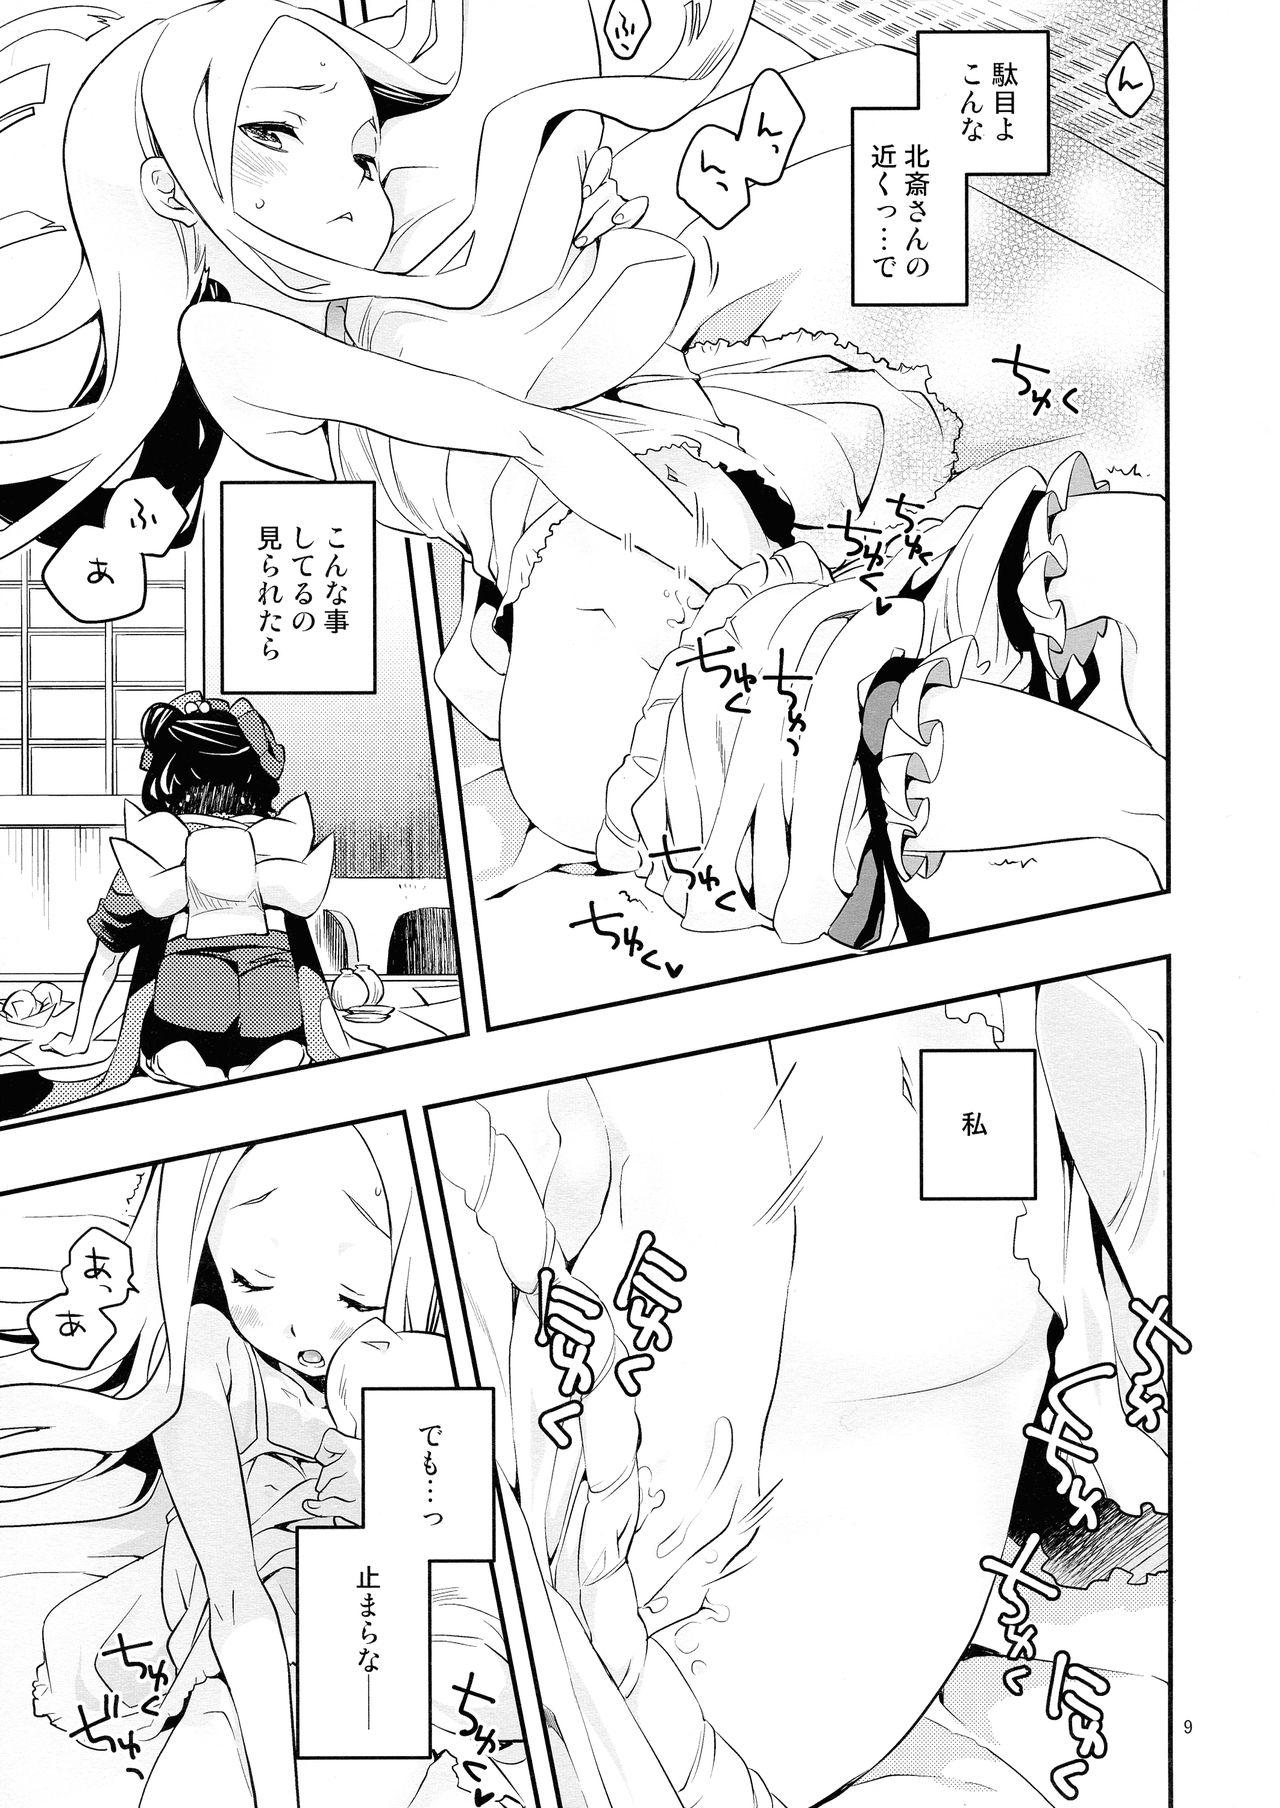 Amature Porn Kyou wa Otomari no Hi dakara - Fate grand order Virtual - Page 9